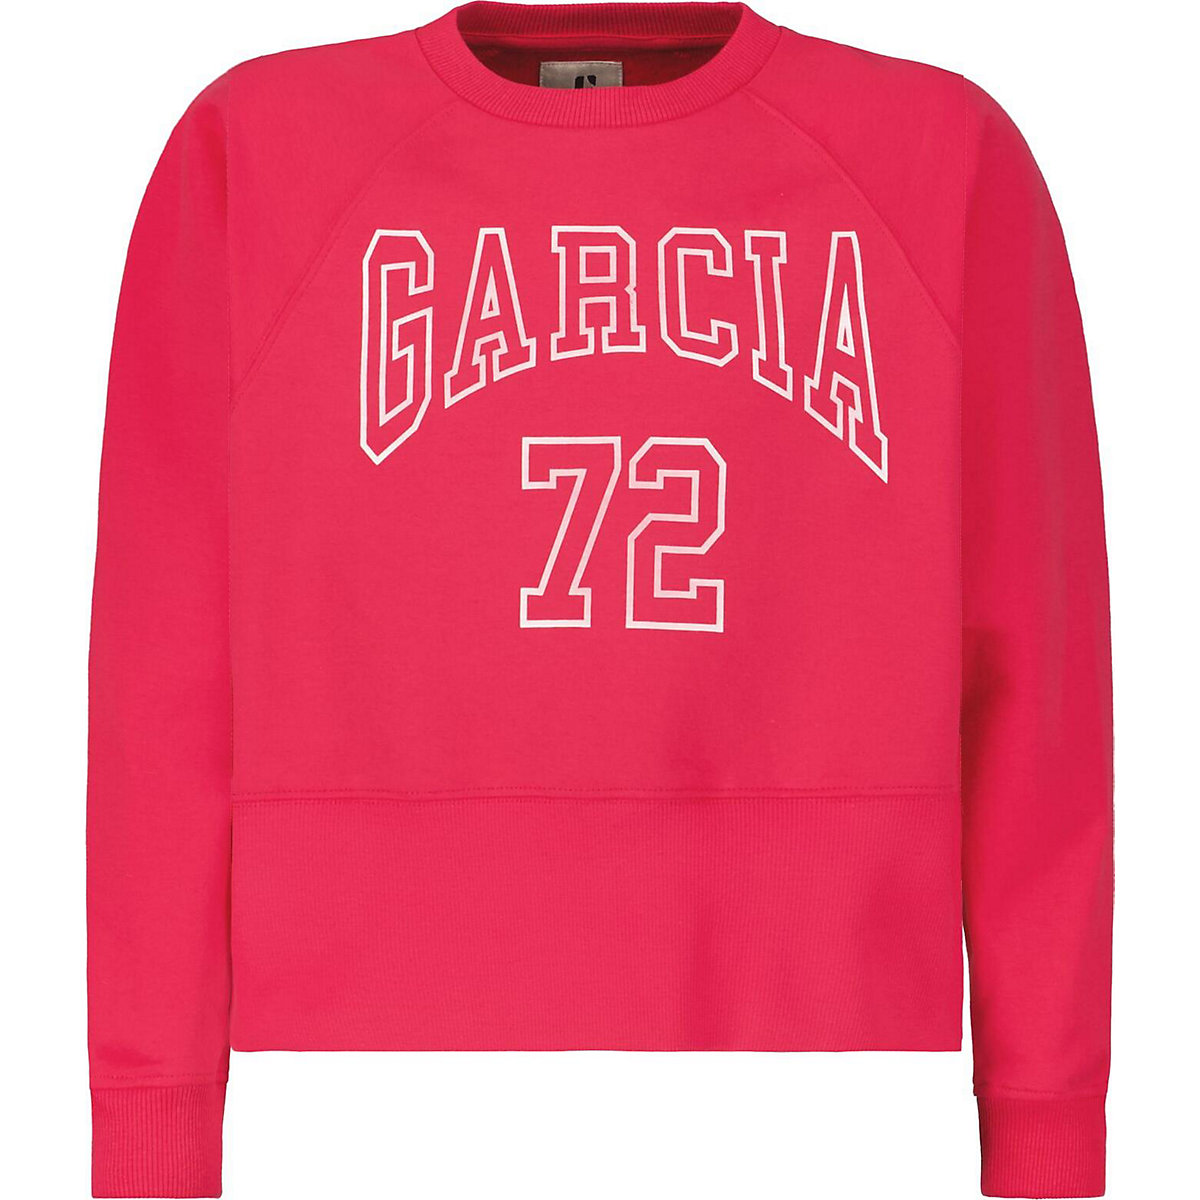 GARCIA JEANS Sweatshirt für Mädchen rot